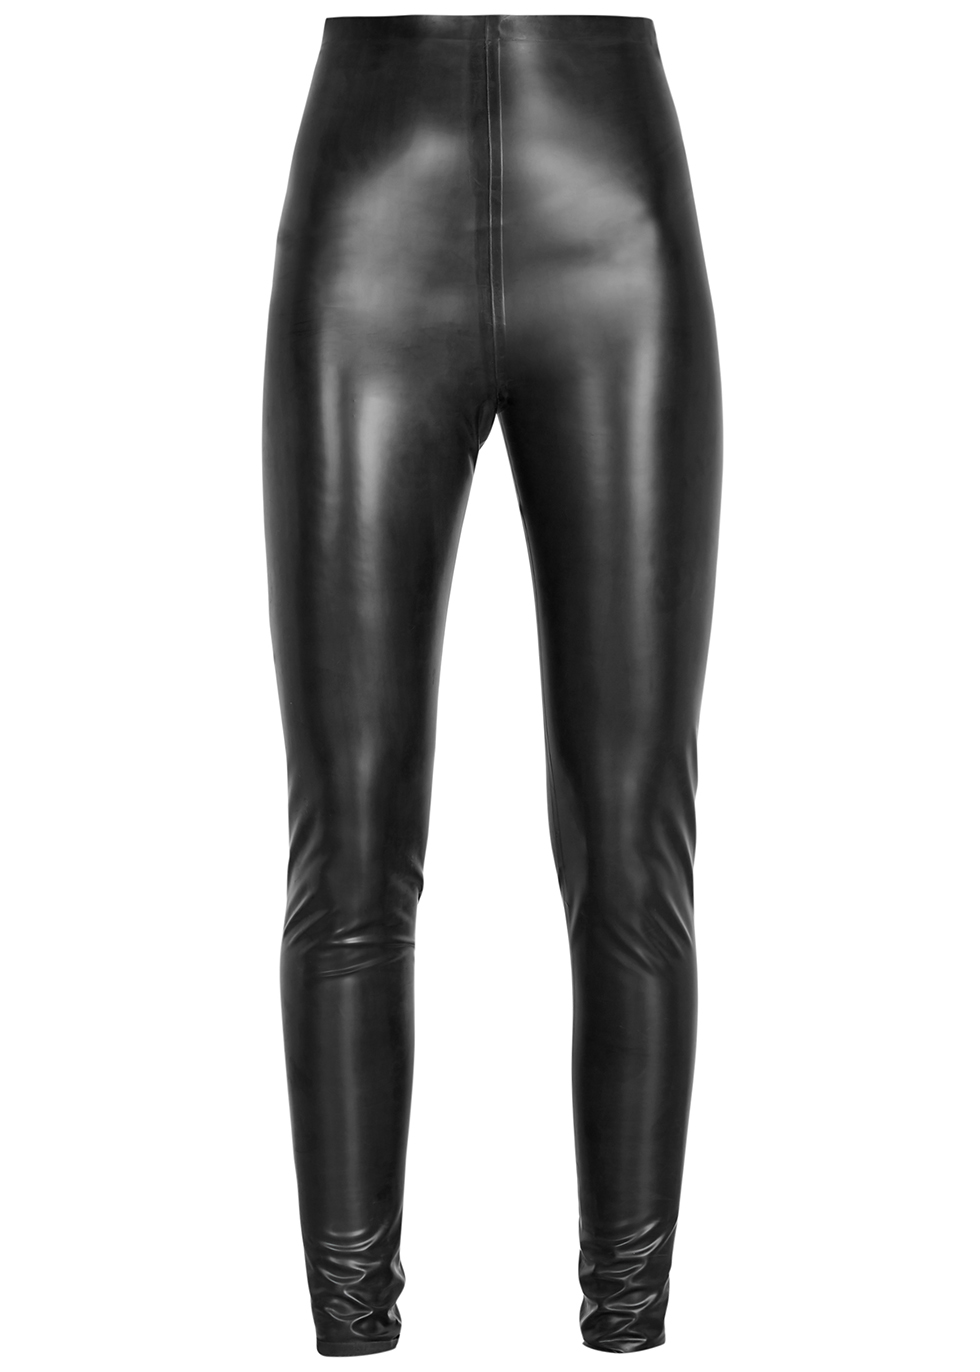 Black latex leggings